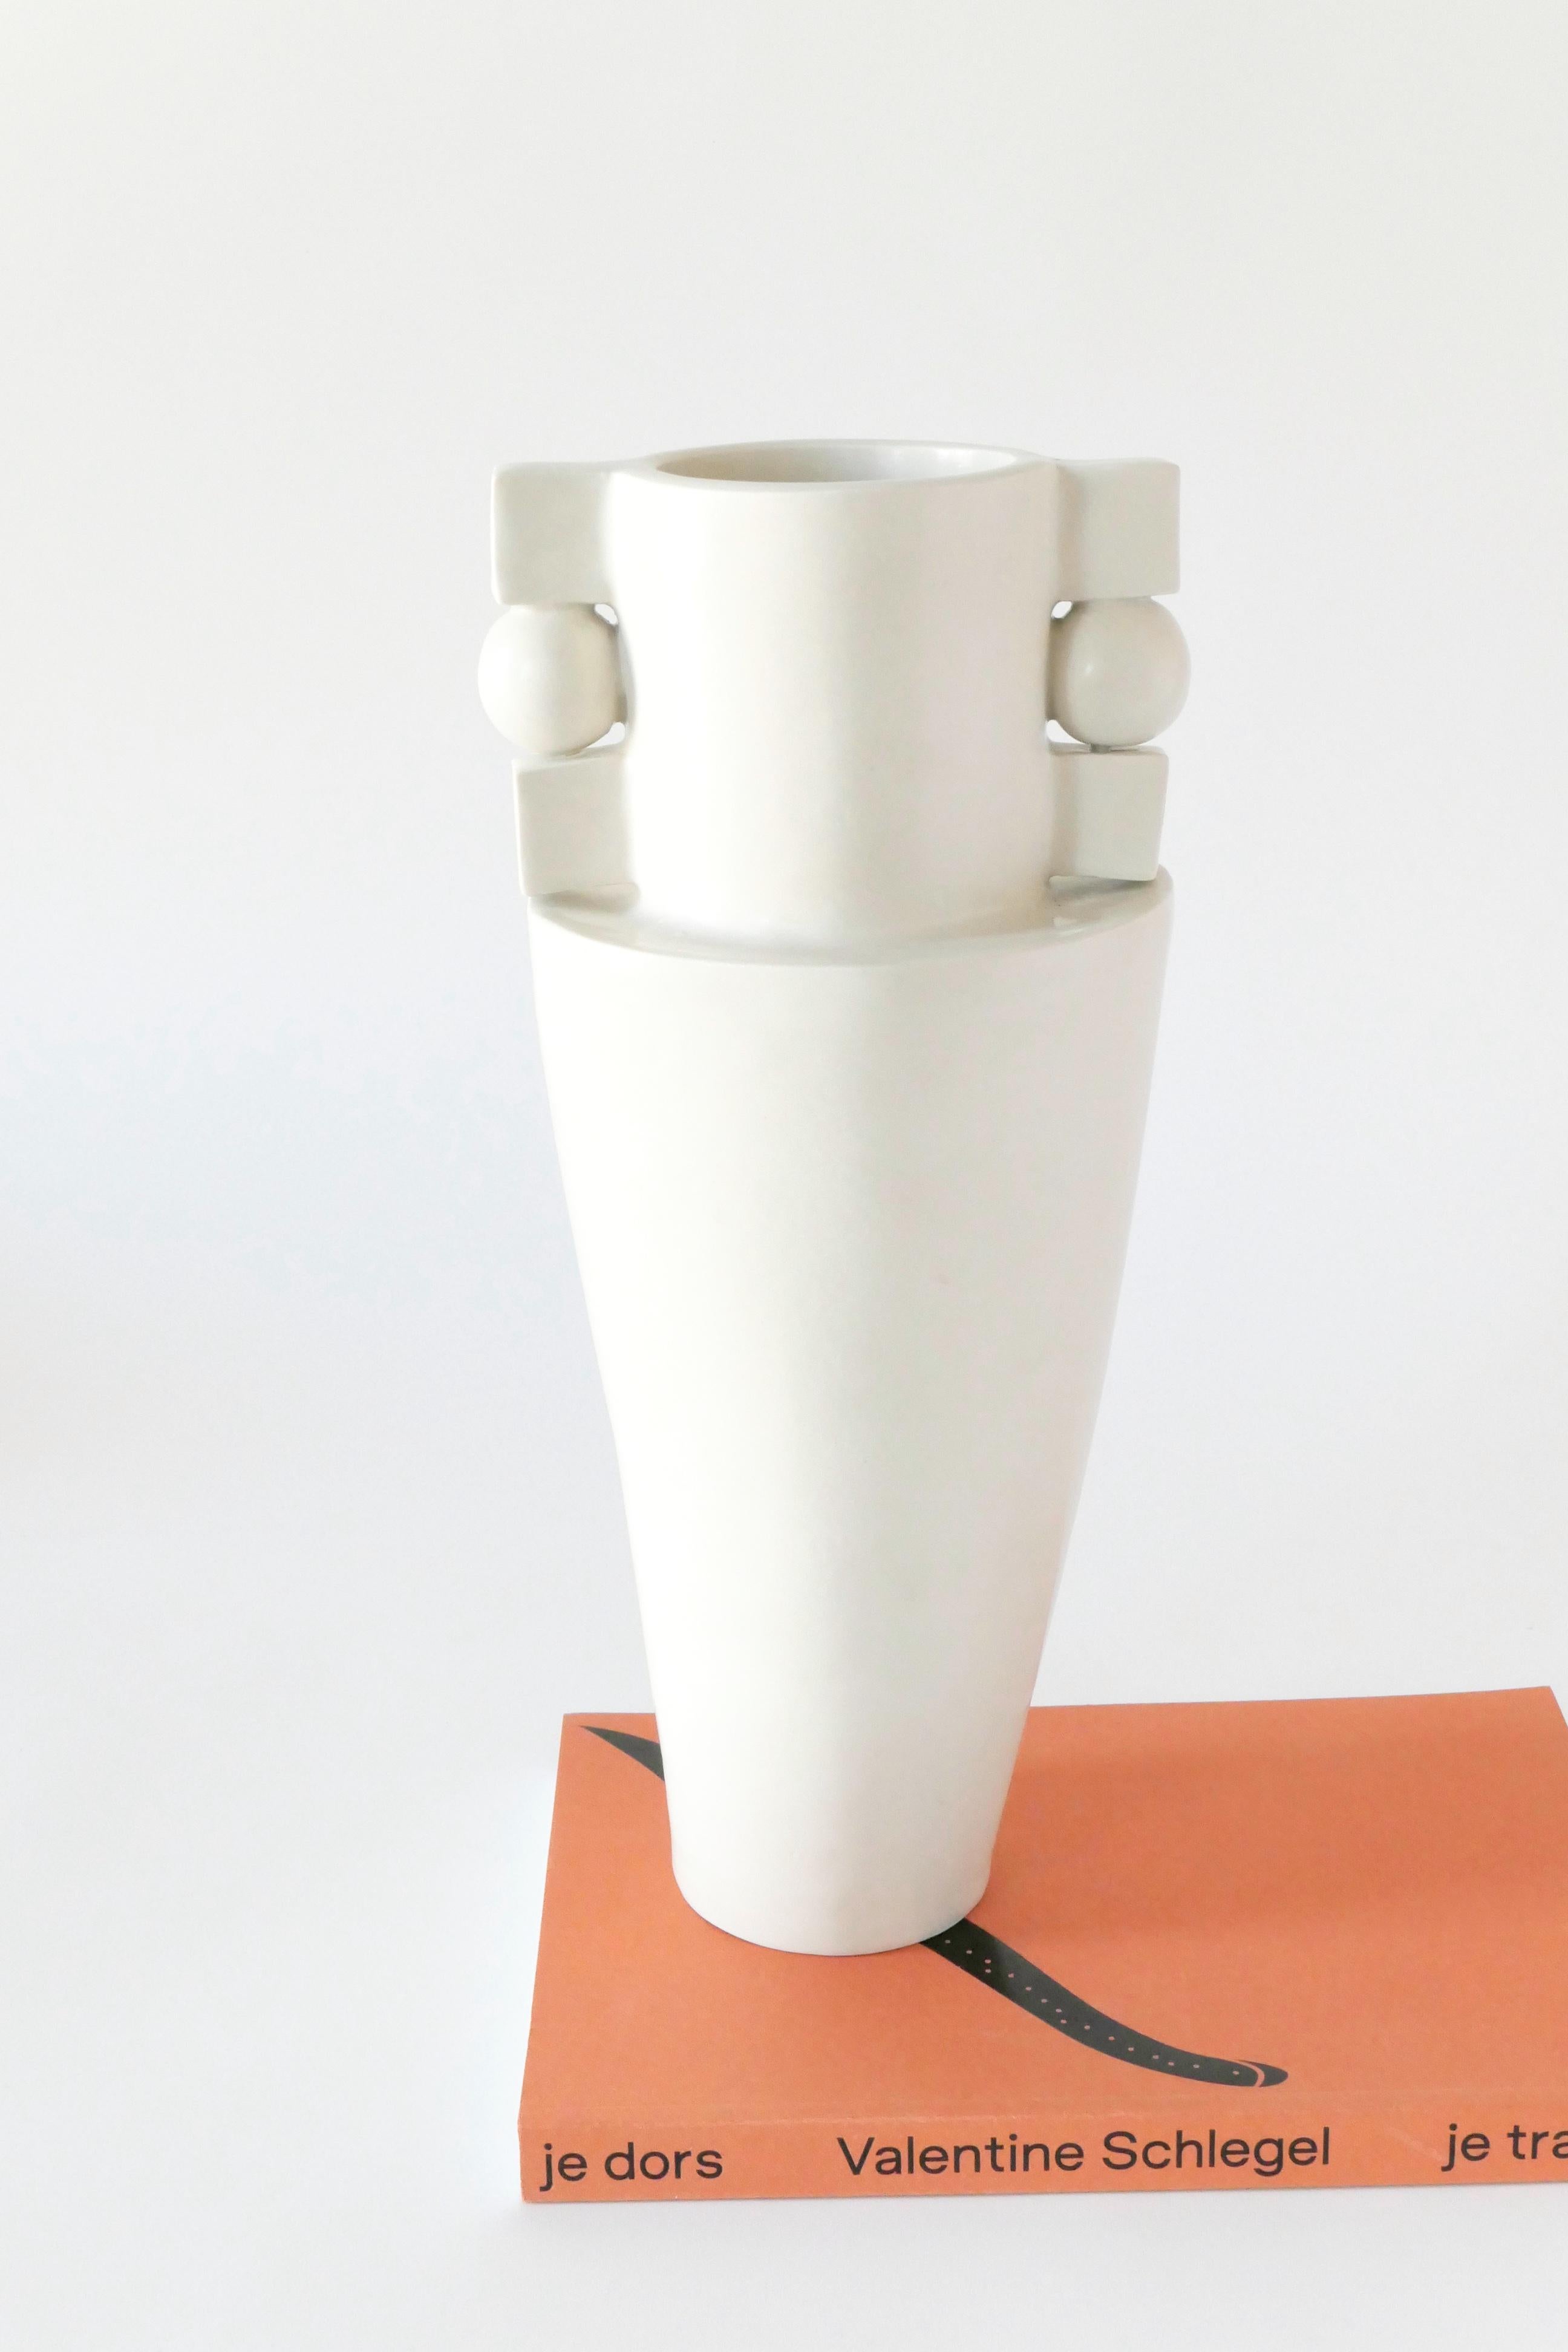 Modern Contemporary Handmade Ceramic Vase in White